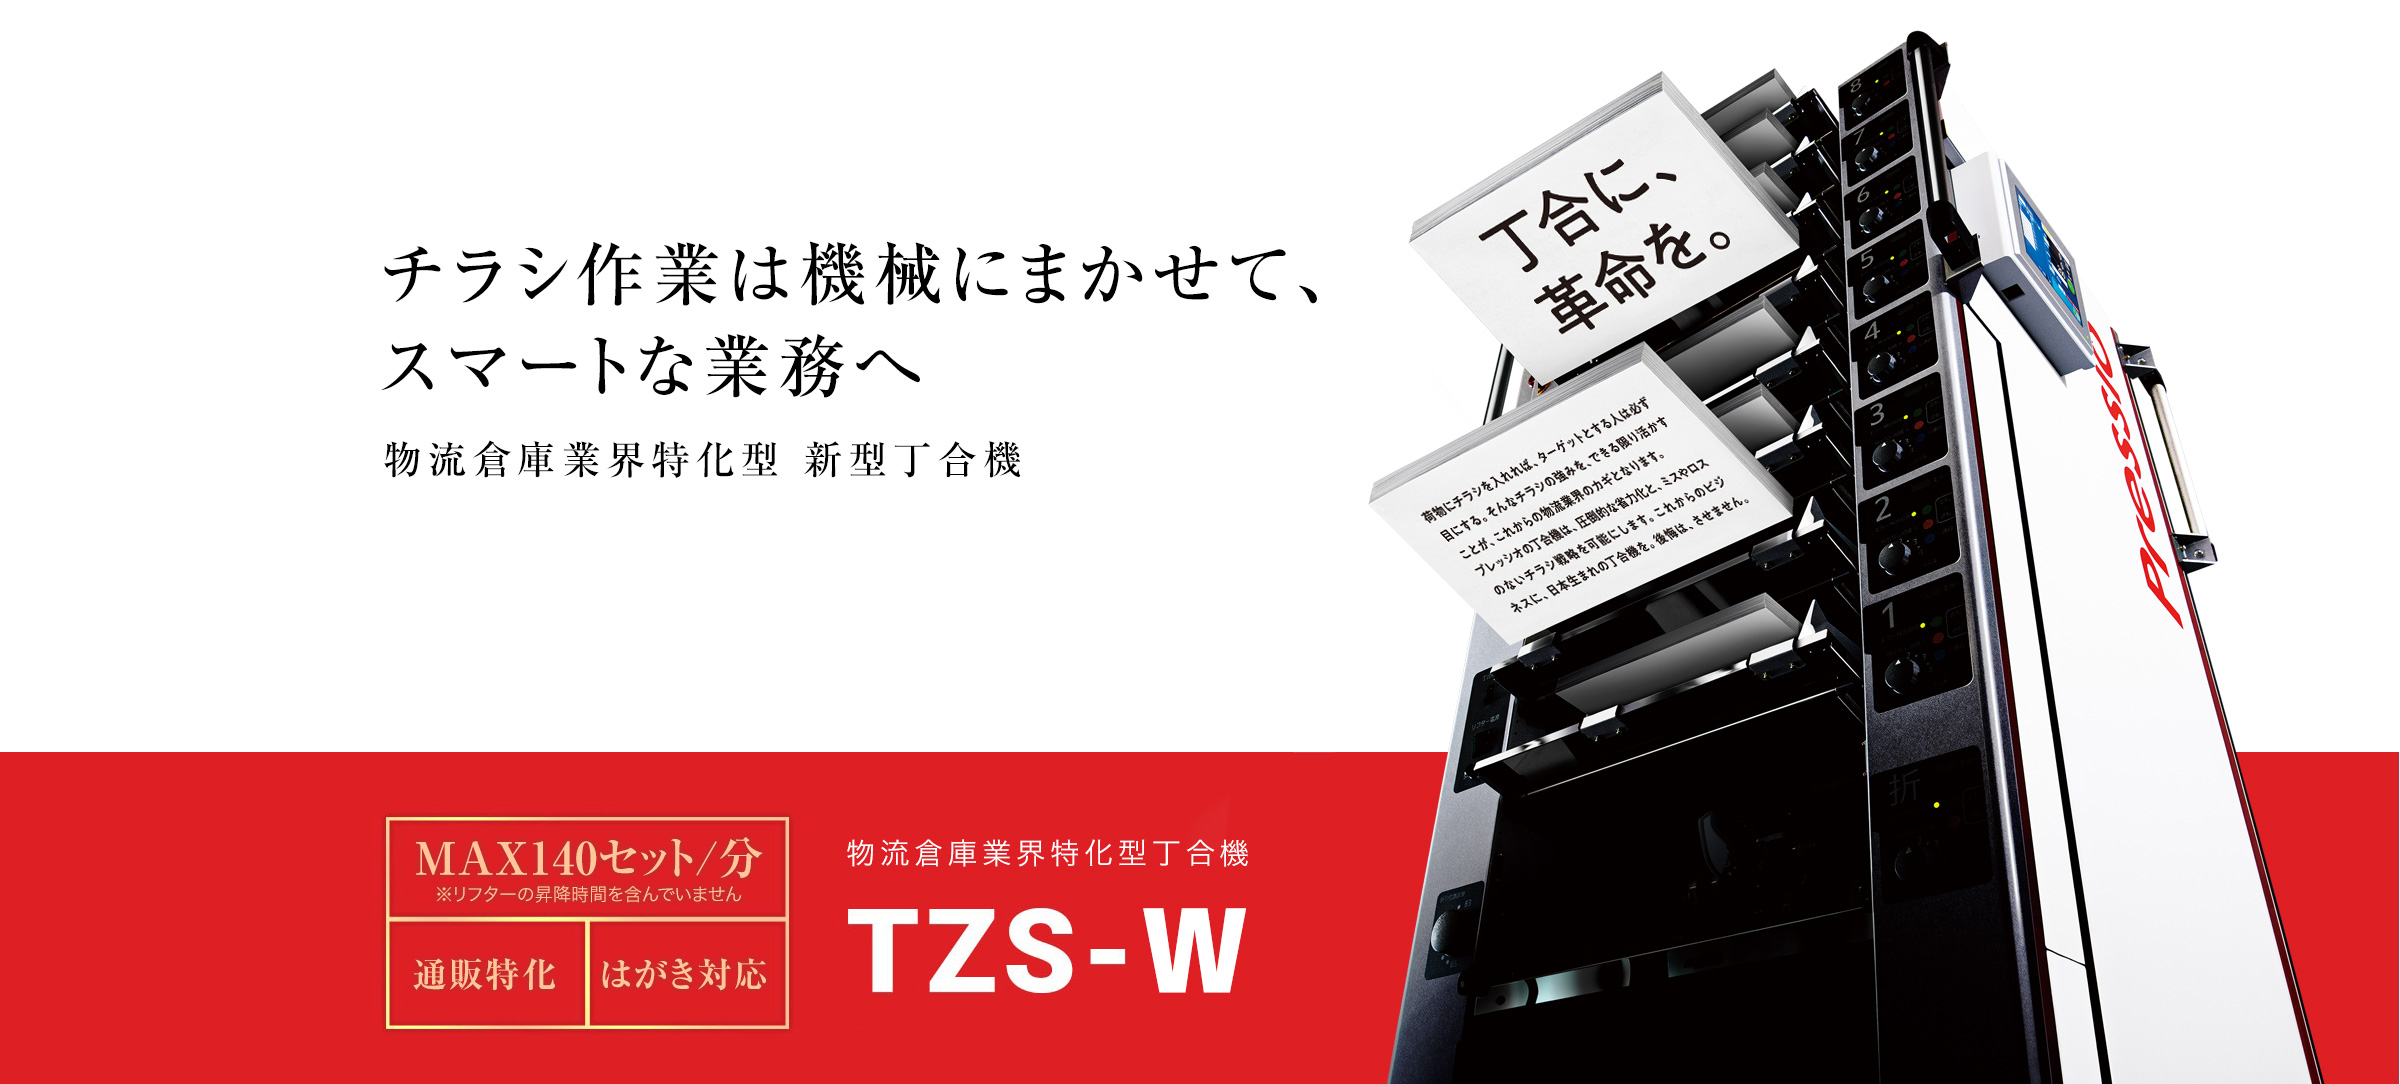 チラシ作業は機械にまかせて、スマートな業務へ TZS-W